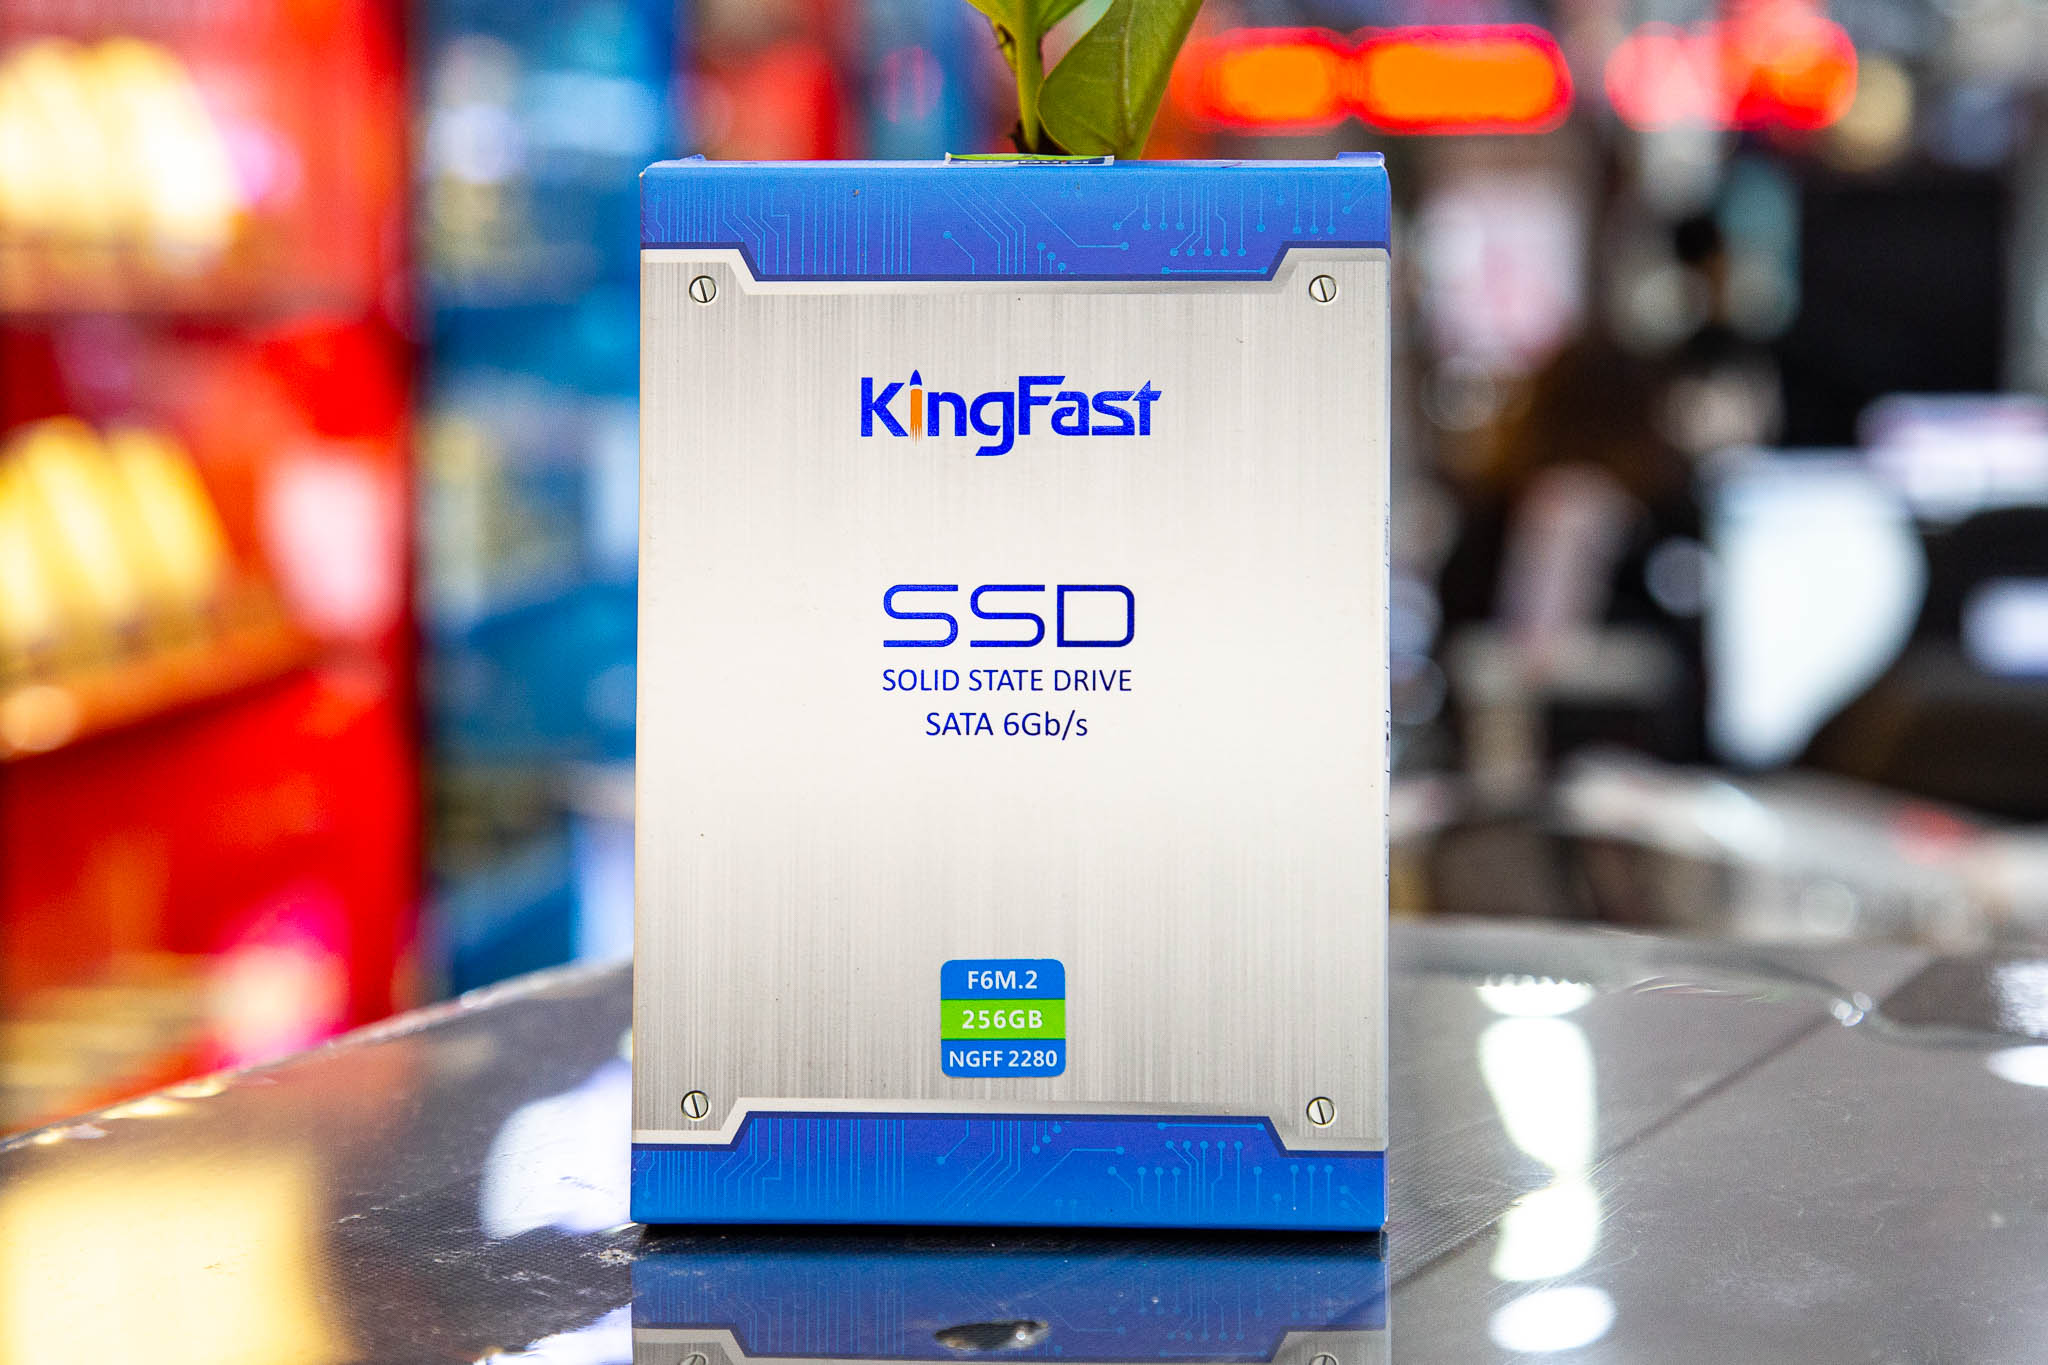 Ổ cứng SSD Kingfast F6M 256GB M.2 2280